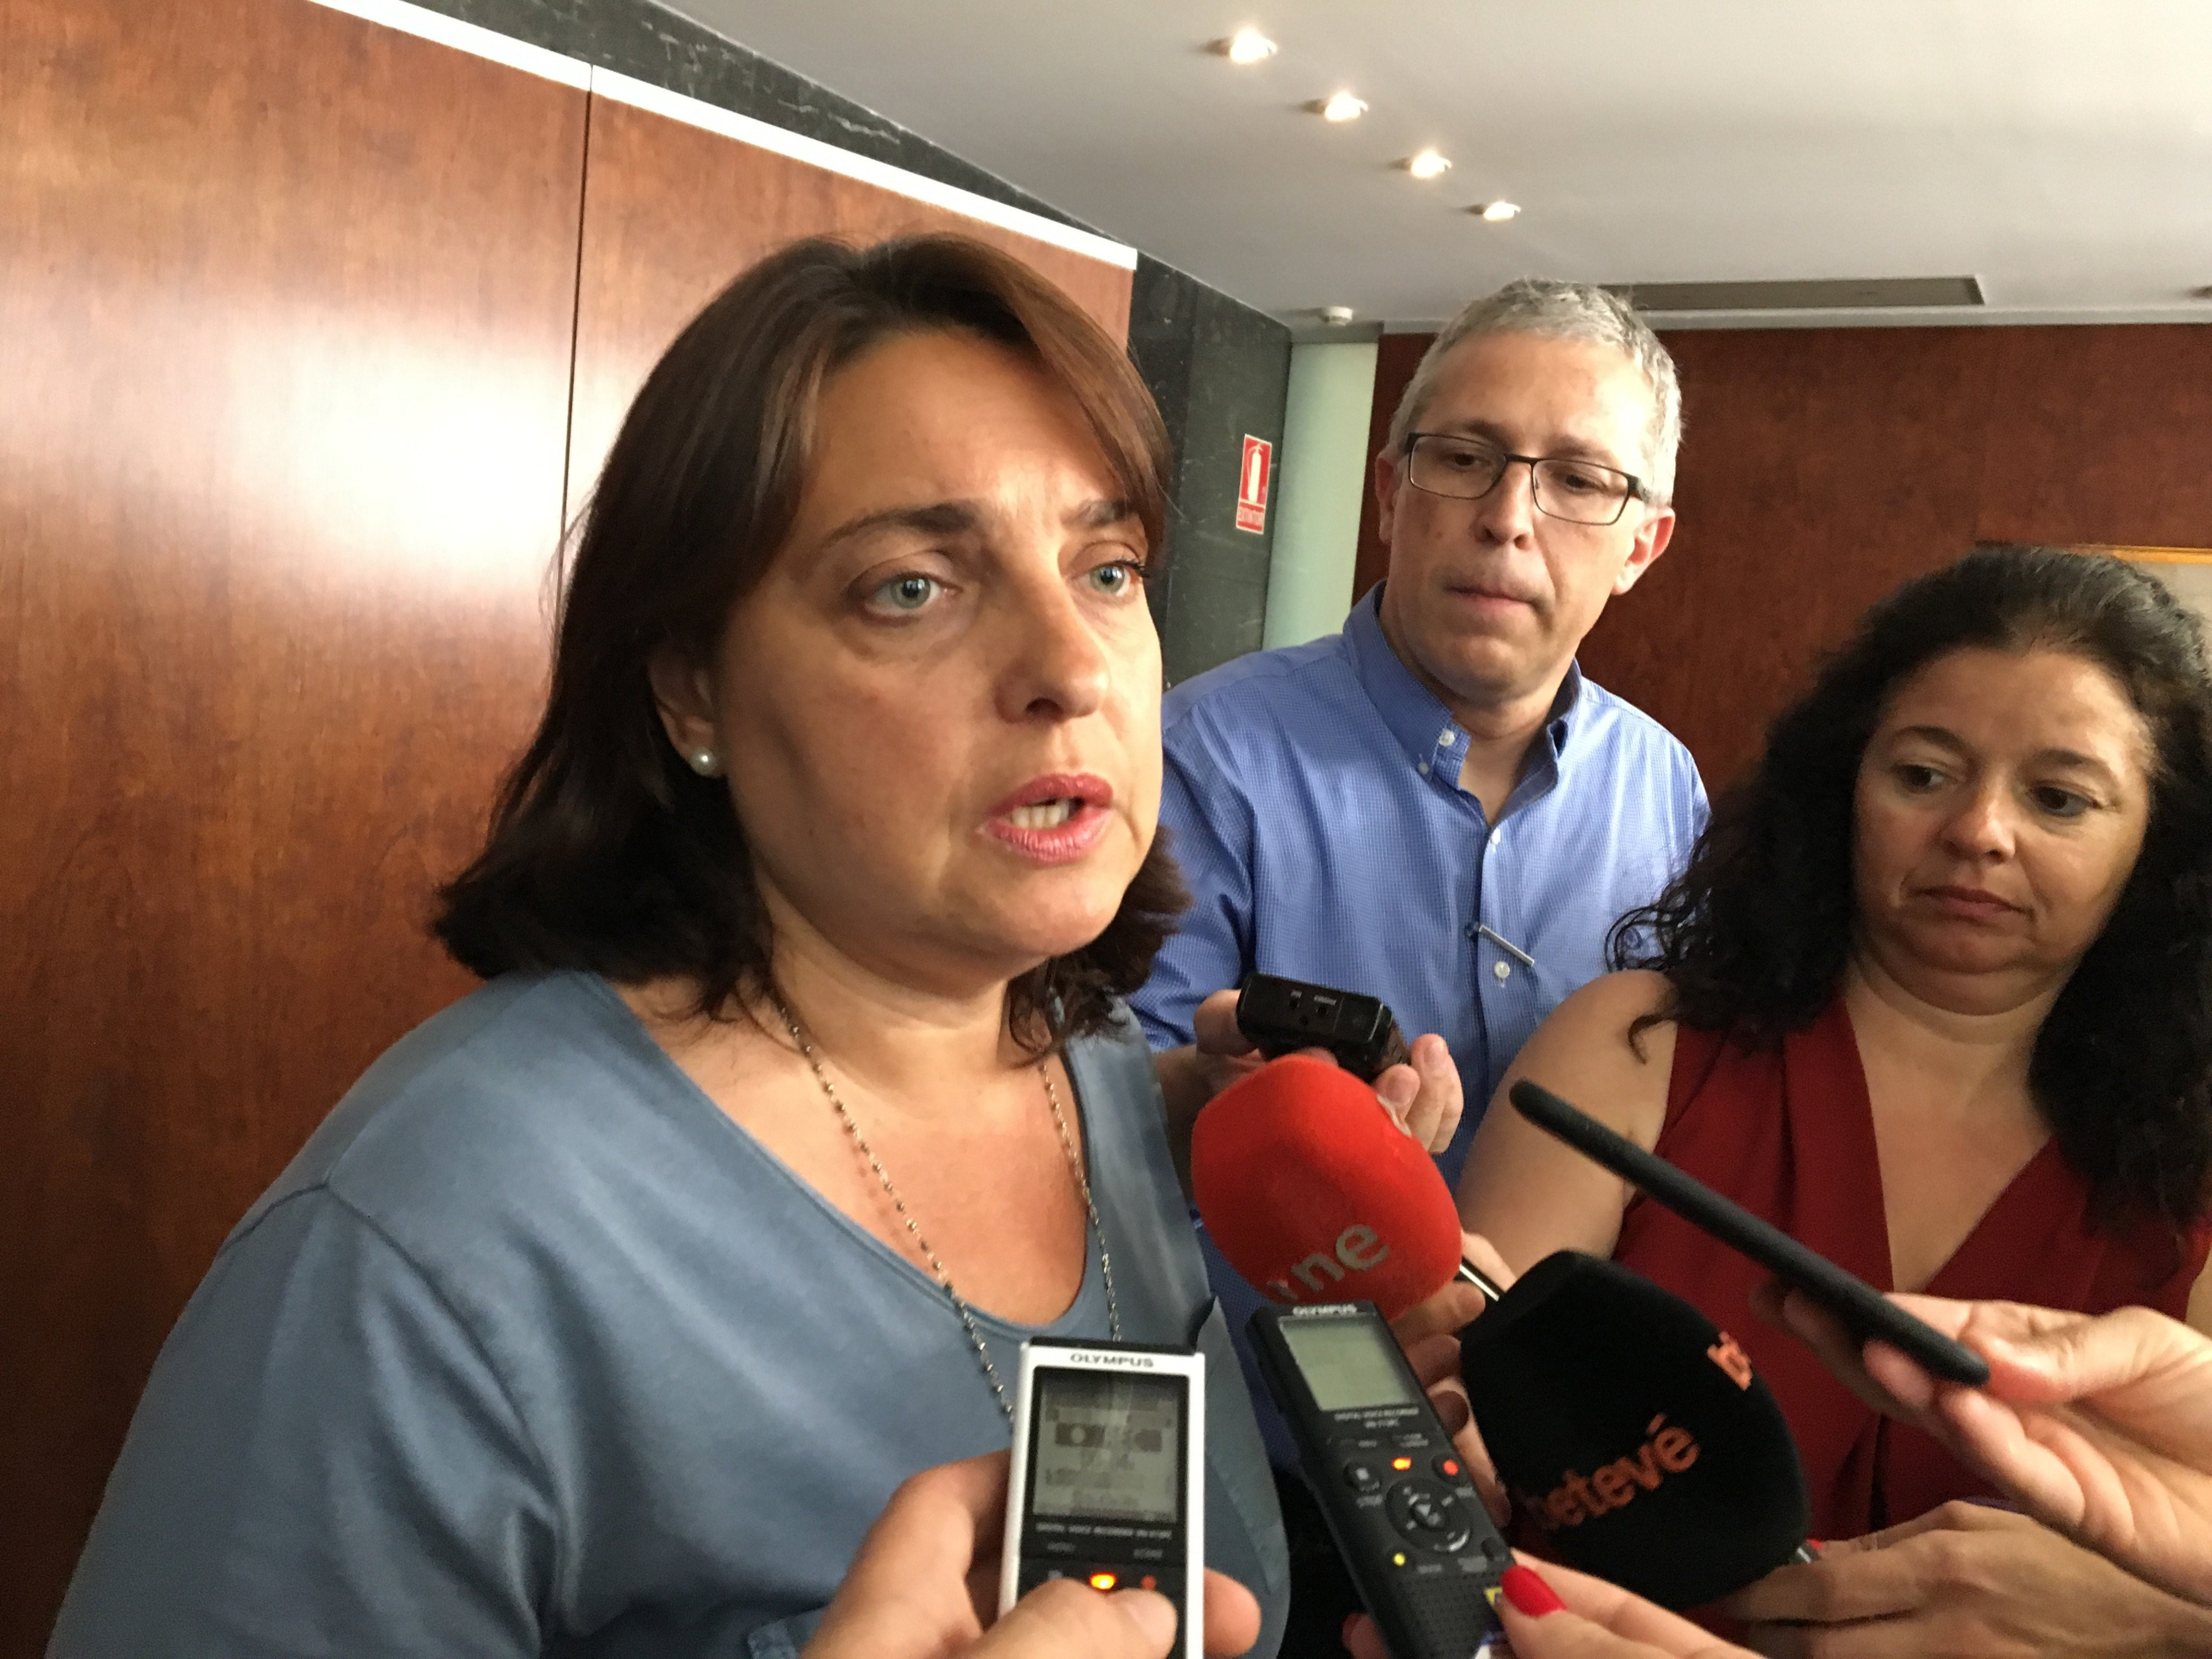 Sònia Recasens, del grupo Demòcrata, atiende a los medios tras haberse ido de la comisión de Economía y Hacienda / DGM